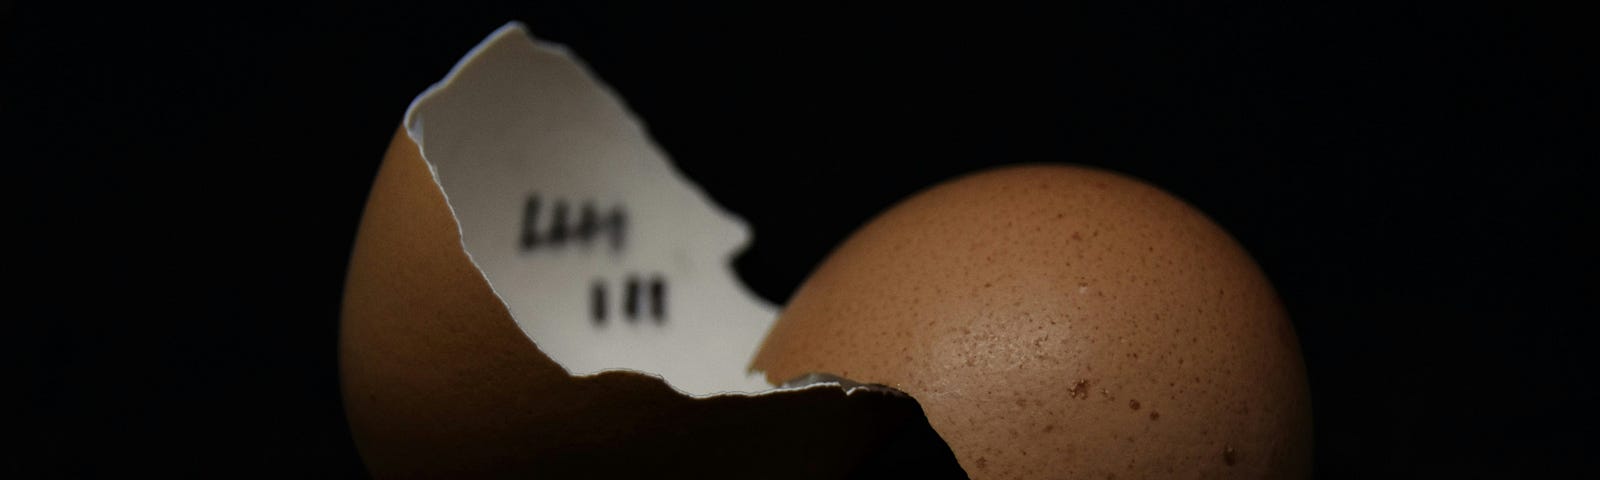 A broken egg shell with tallies written on the inside